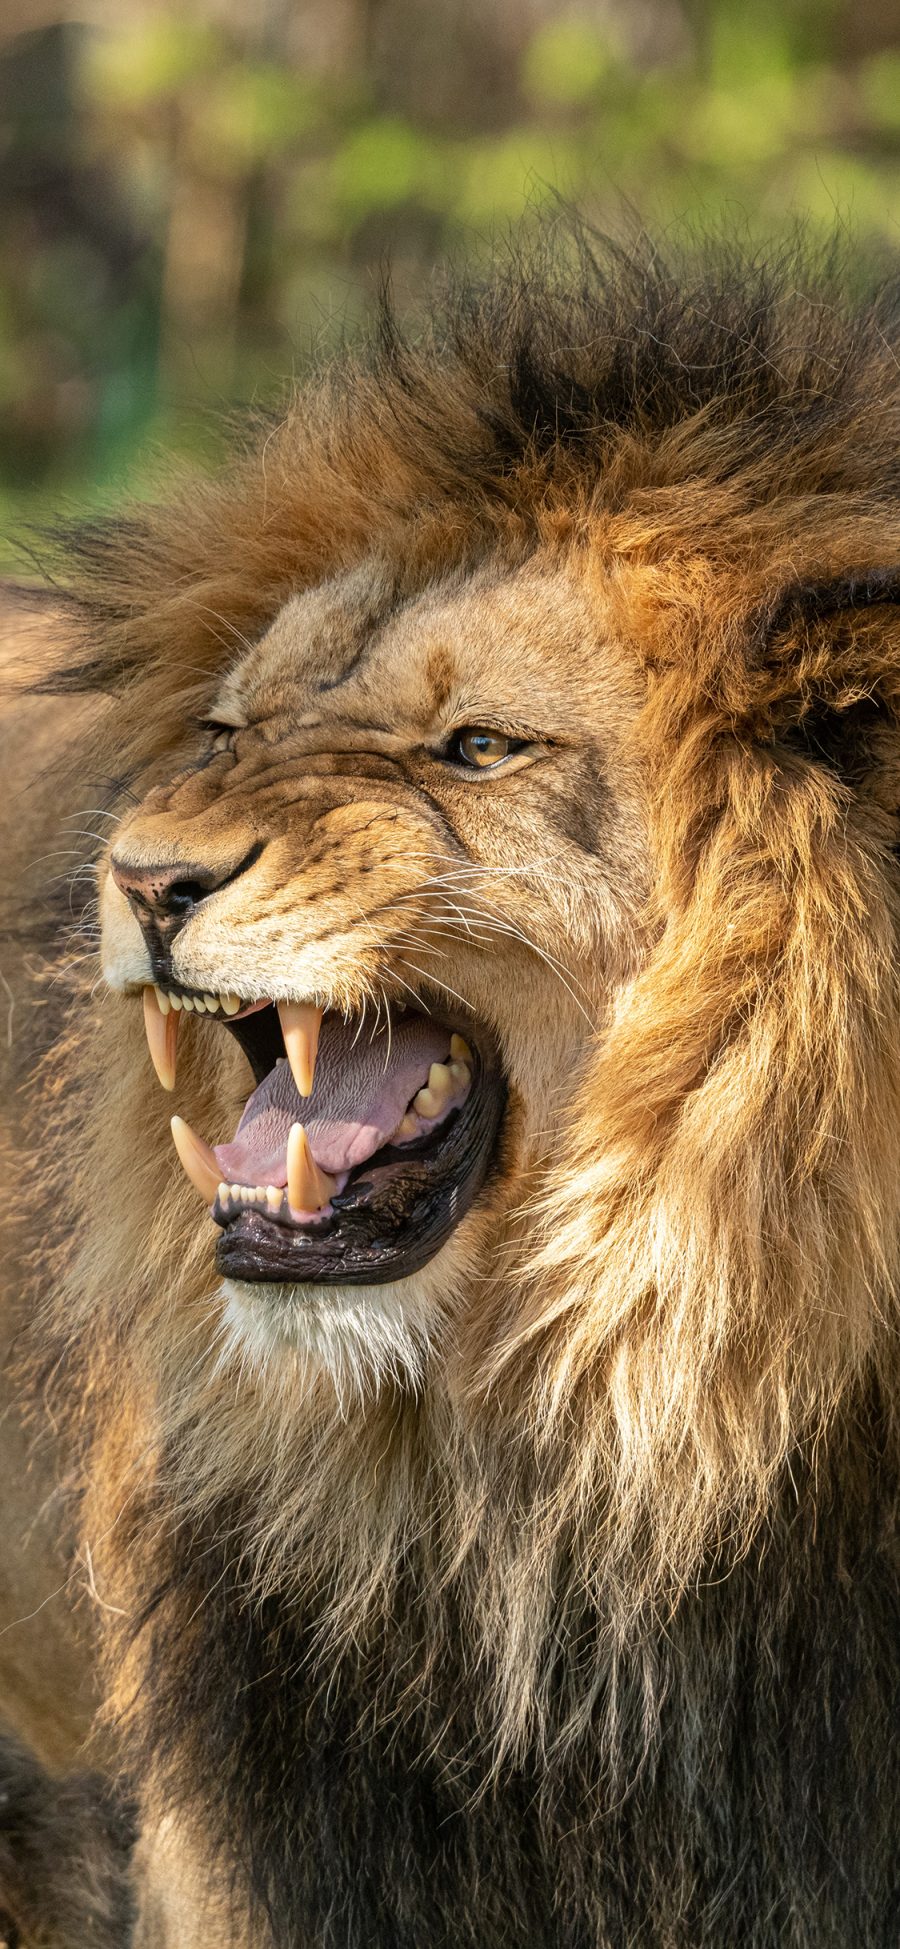 [2436×1125]狮子 凶猛 猛兽 毛发 尖牙 森林之王 苹果手机壁纸图片